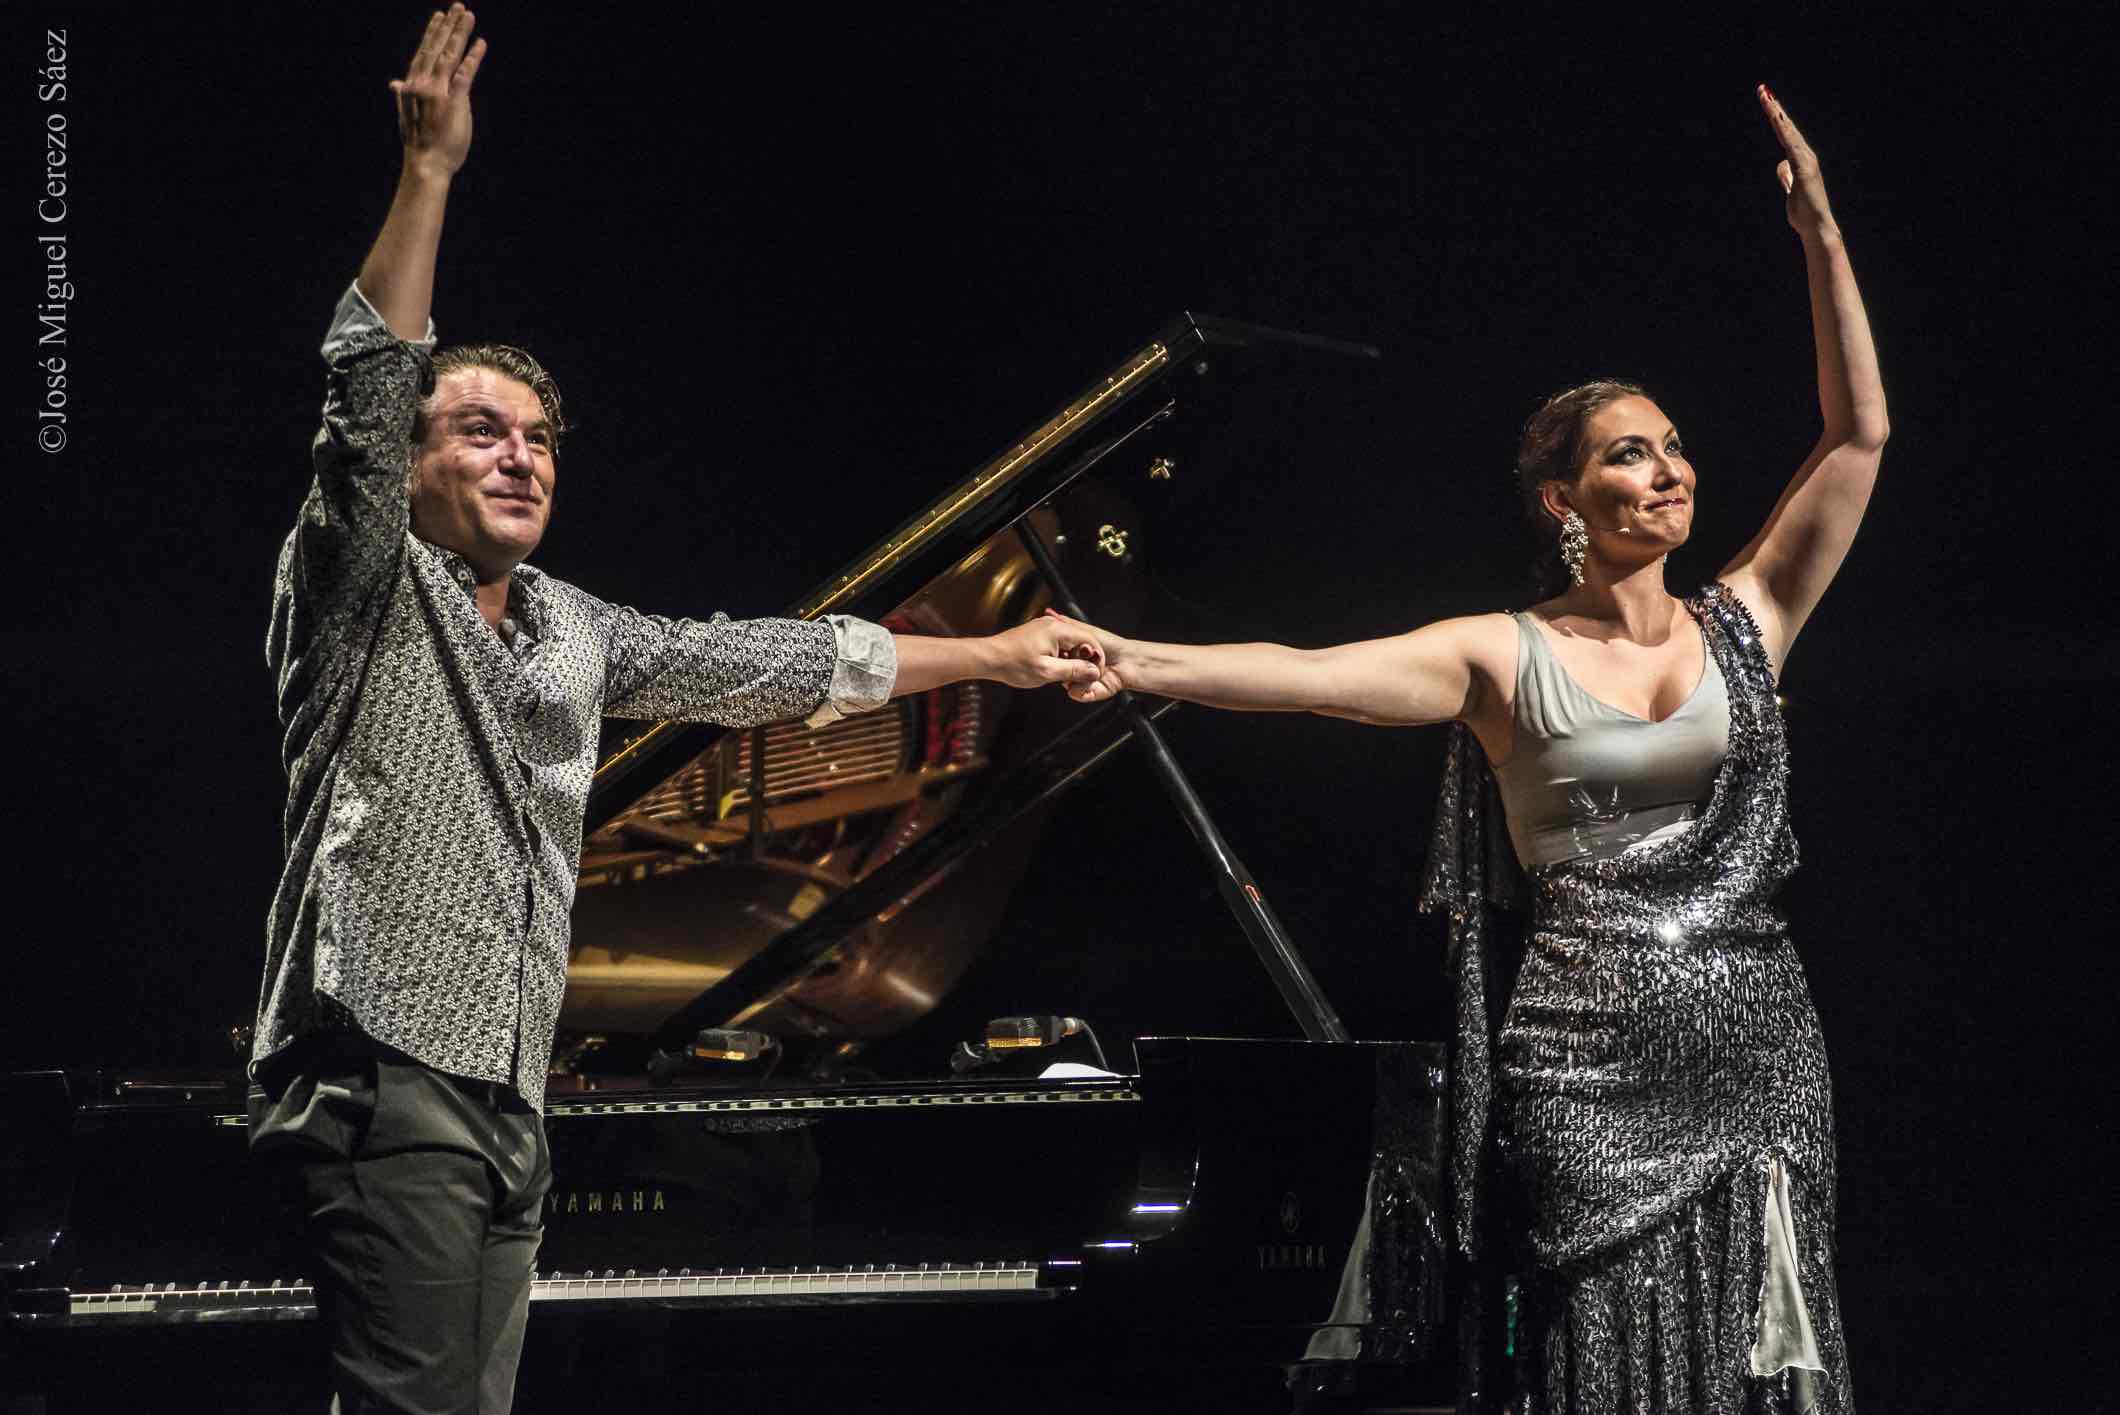 Dorantes y Marina Heredia saludan al público de uno de sus conciertos. FOTO: JOSÉ MIGUEL CEREZO SÁEZ (Tomares.es)